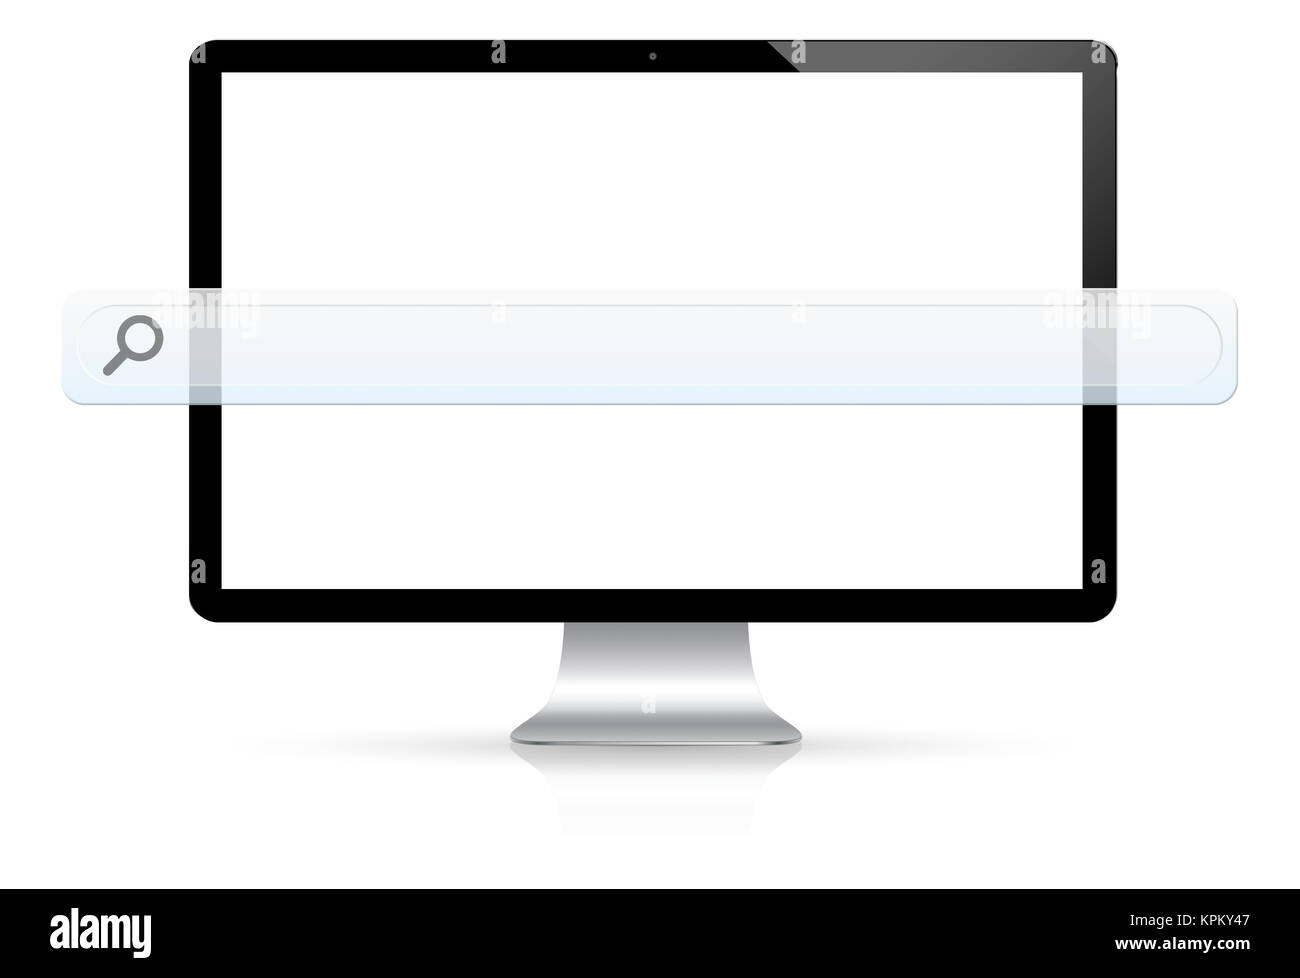 L'ordinateur moderne avec bar web vide Banque D'Images